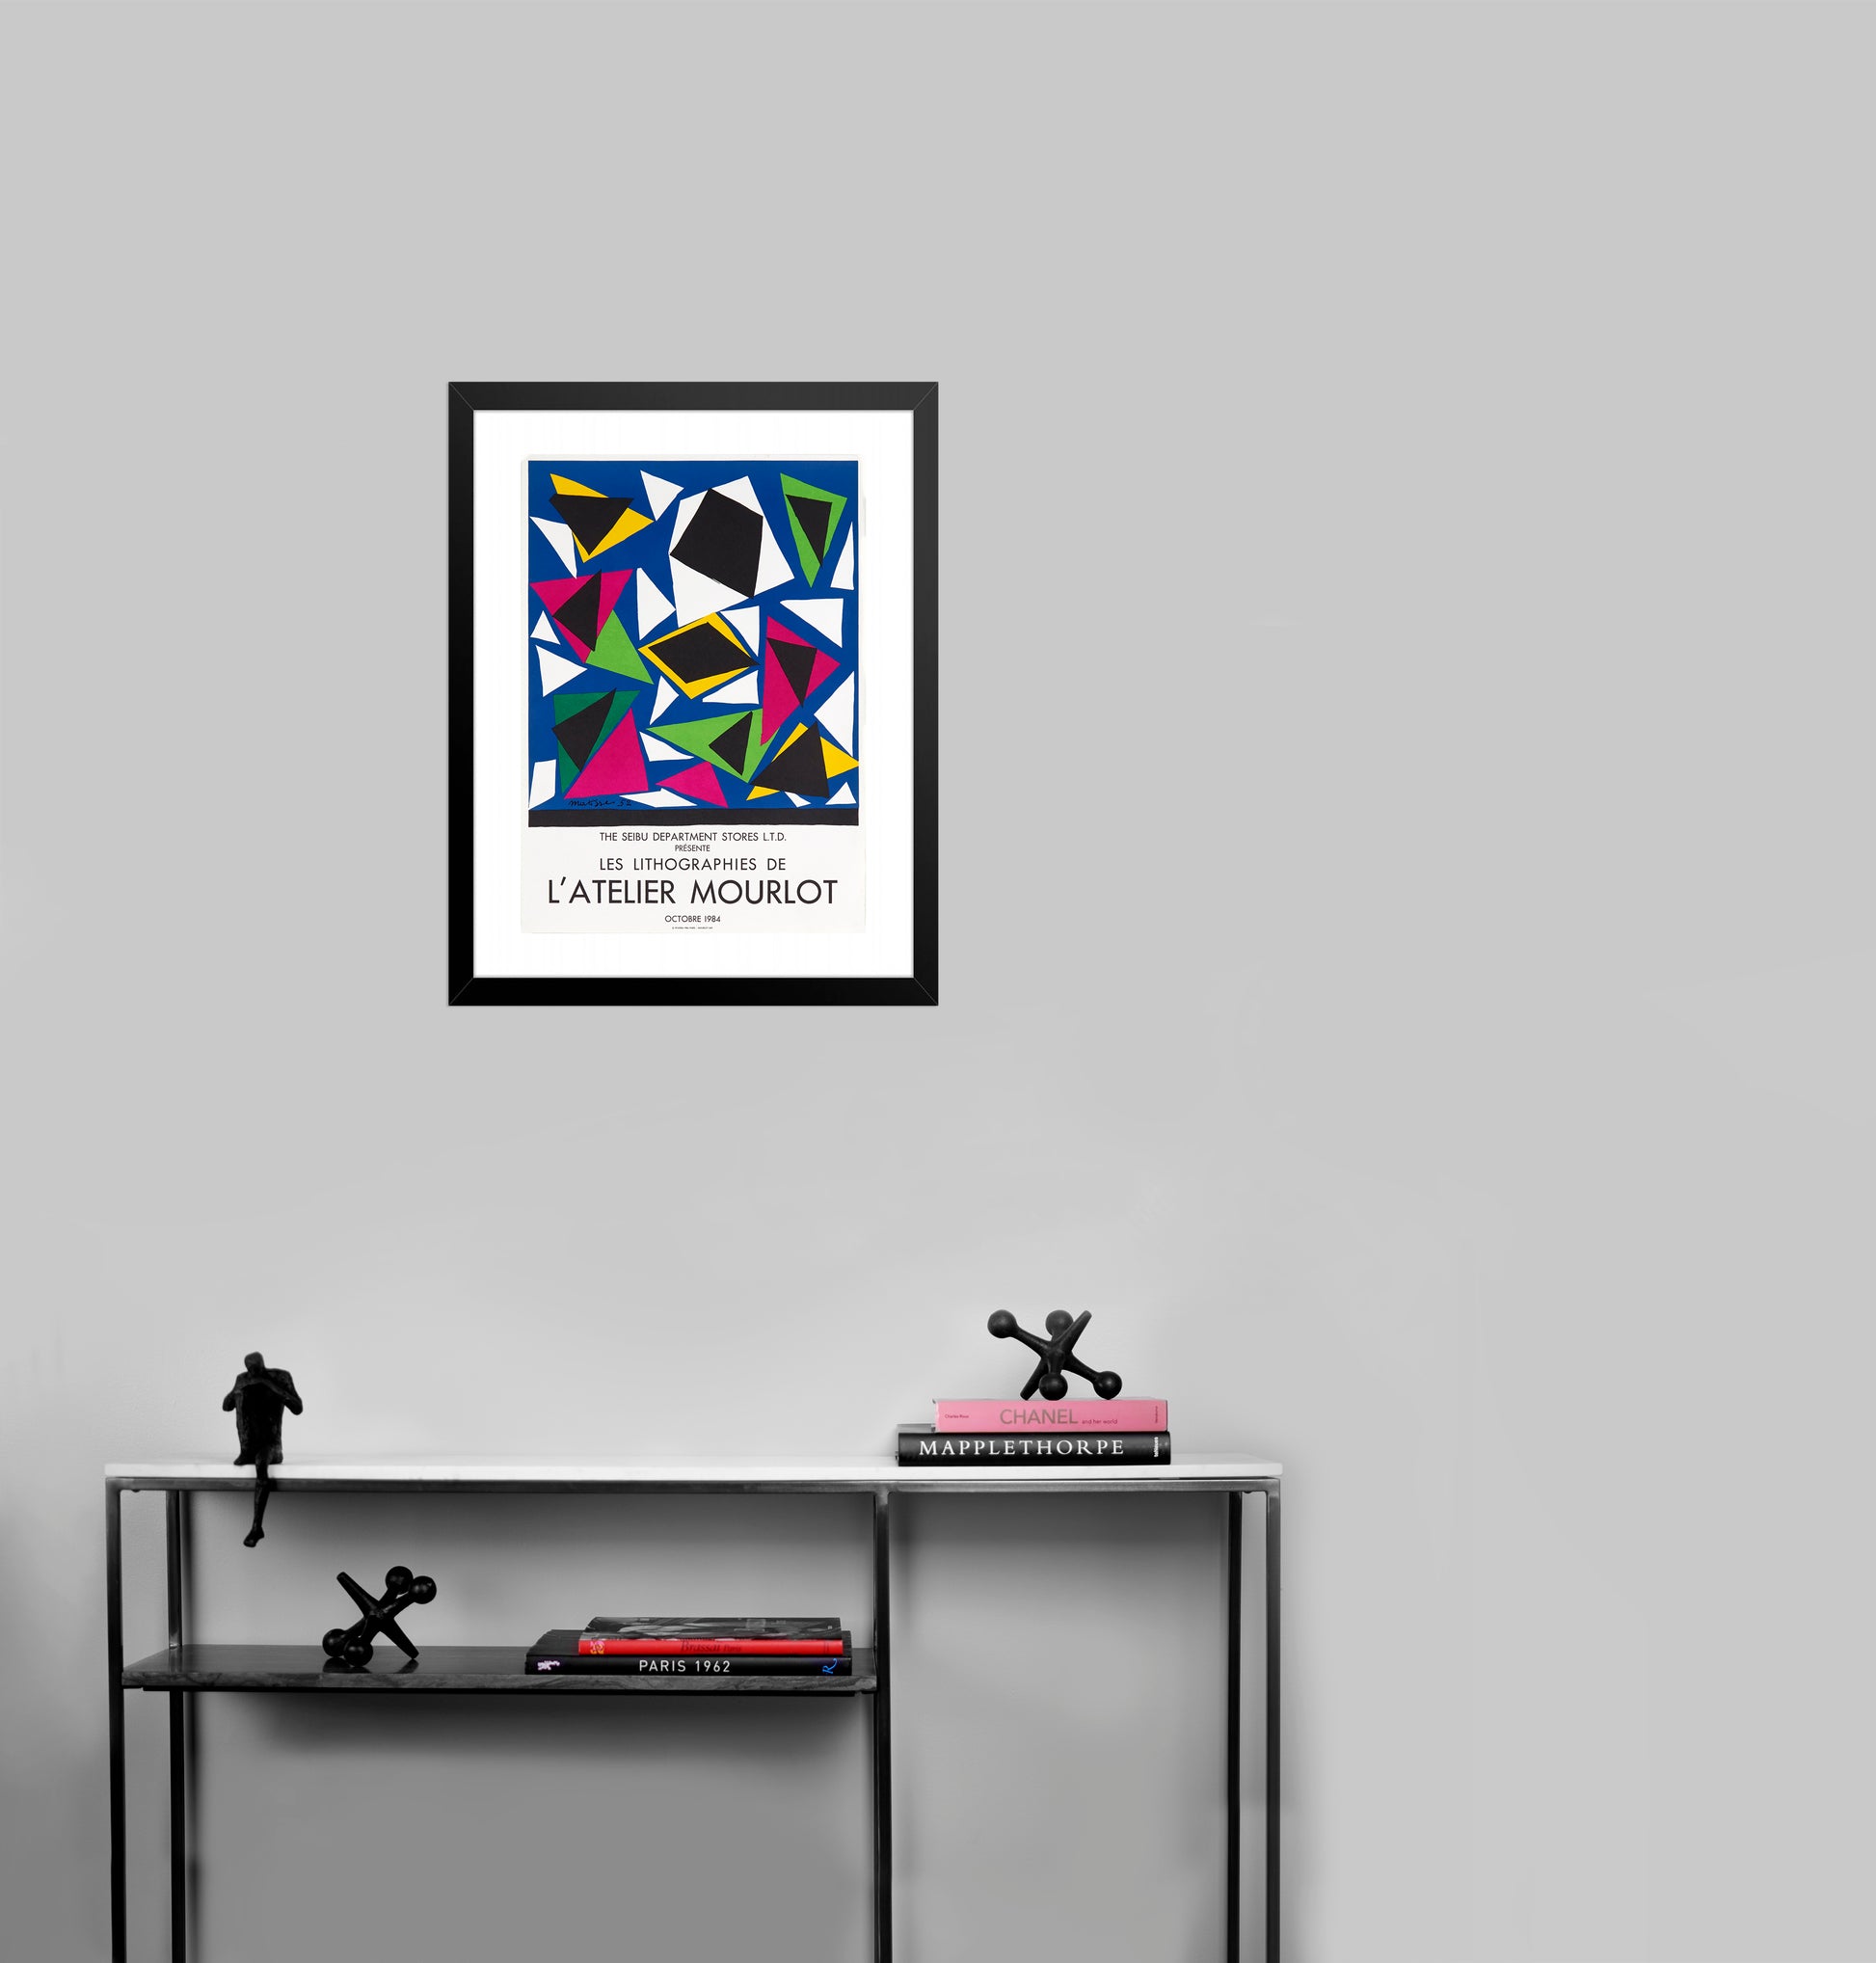 Les Lithographies de L'Atelier Mourlot after Henri Matisse, 1984 - Mourlot Editions - Fine_Art - Poster - Lithograph - Wall Art - Vintage - Prints - Original